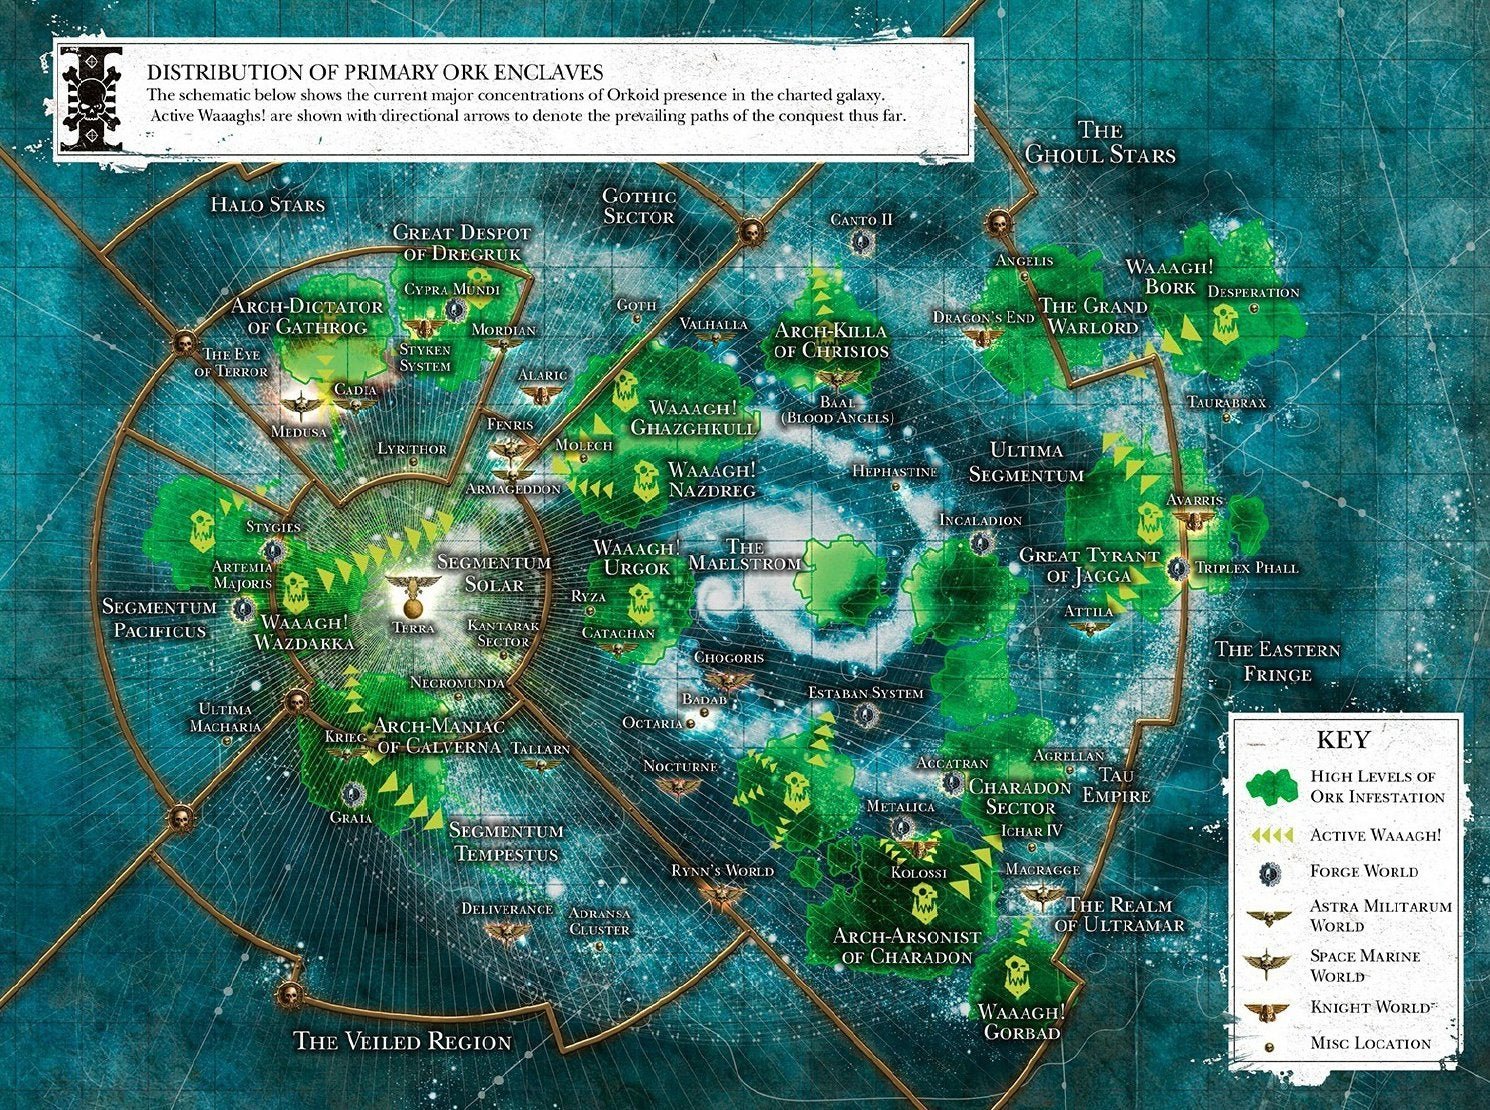 Maps of the Imperium